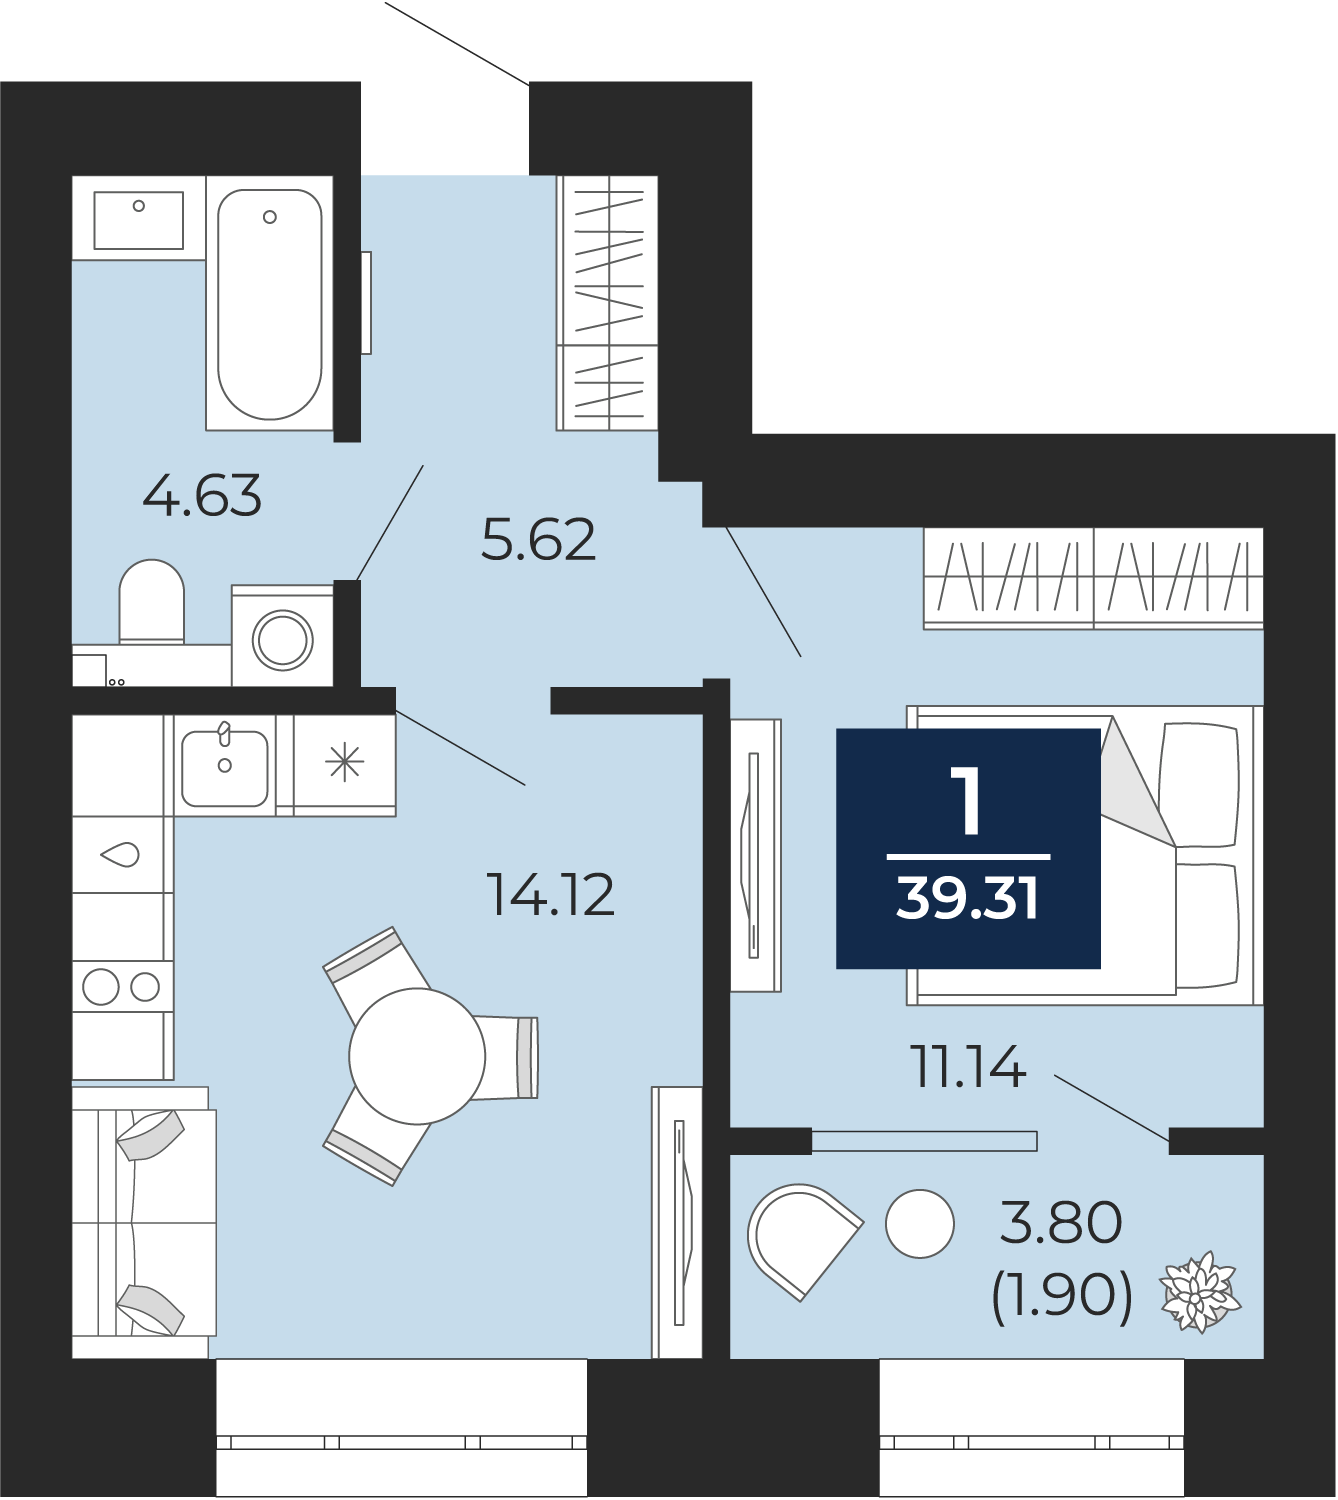 Квартира № 129, 1-комнатная, 39.31 кв. м, 2 этаж